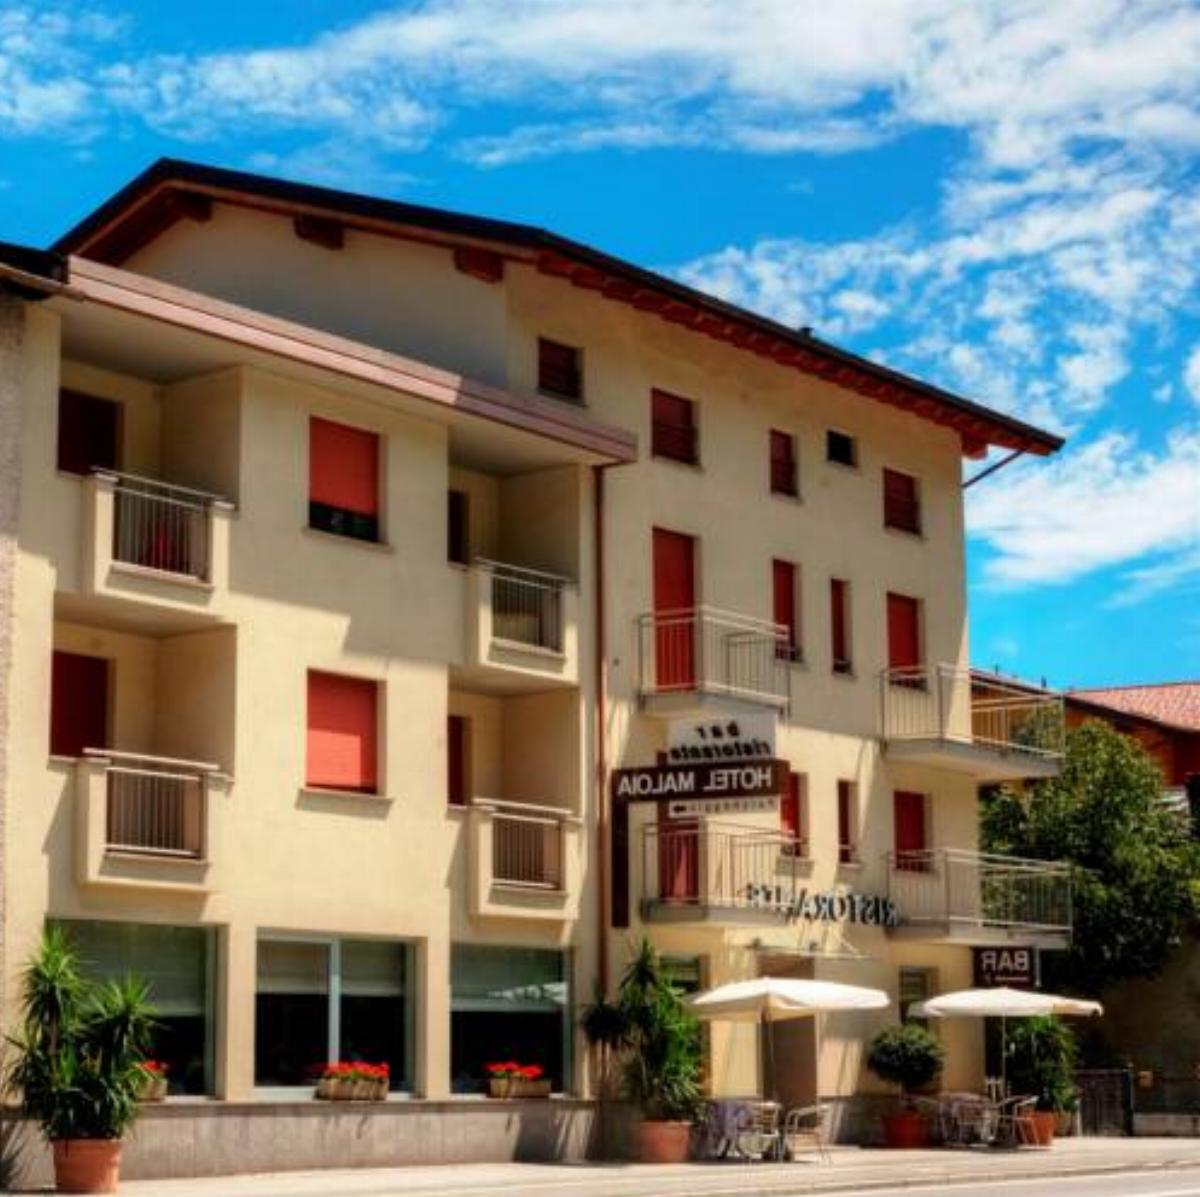 Hotel Maloia Hotel Dubino Italy